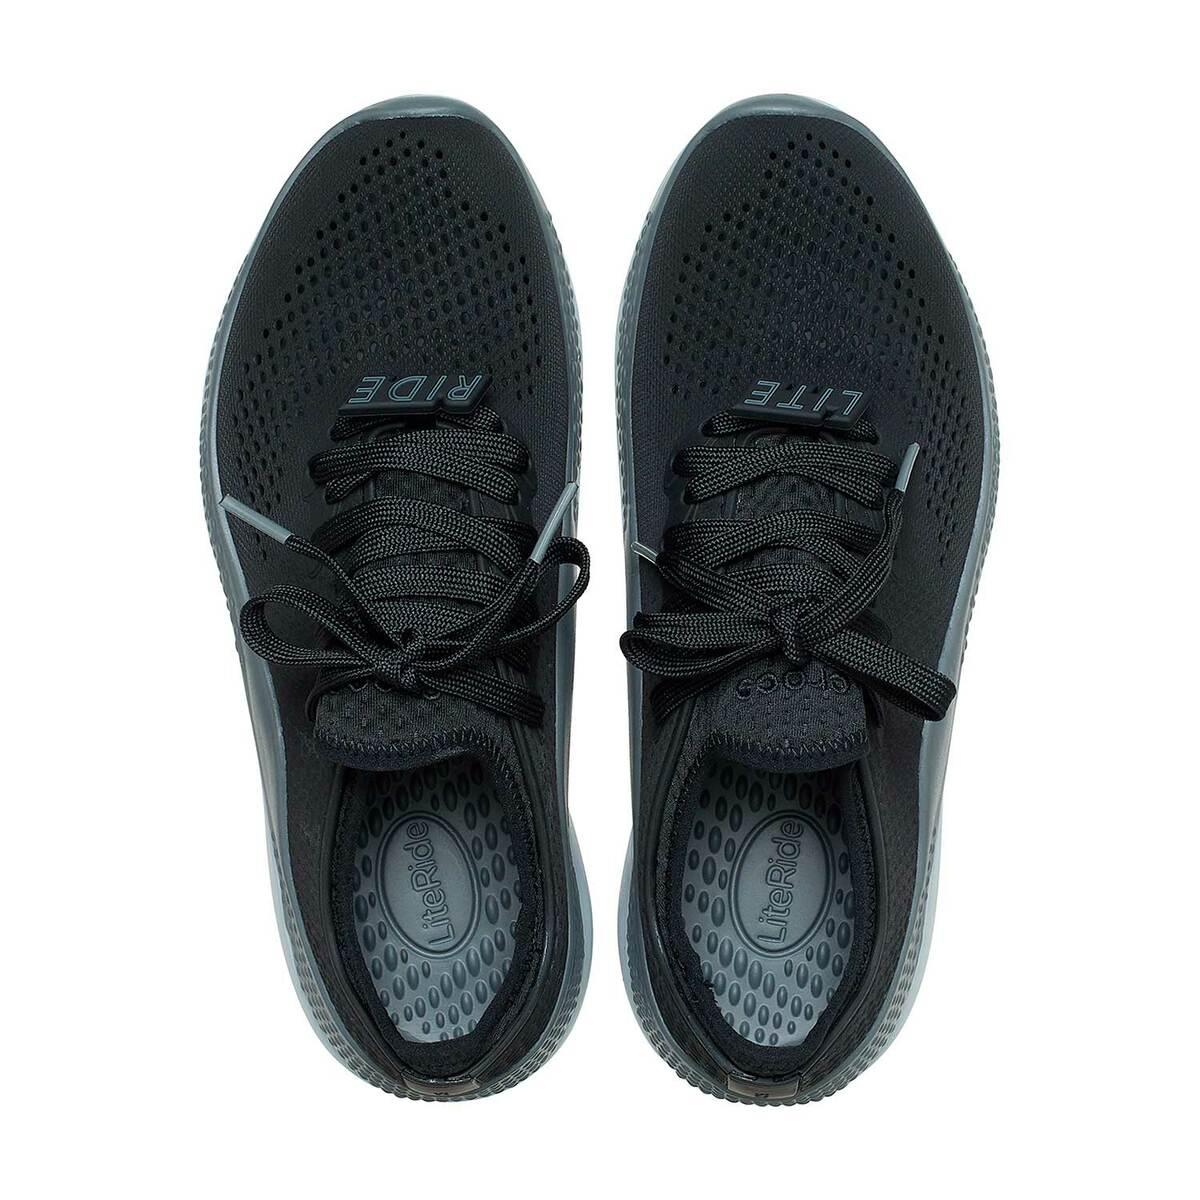 Buy Men Black/Slate Grey Casual Sneakers Online | SKU: 118-206715-0DD ...